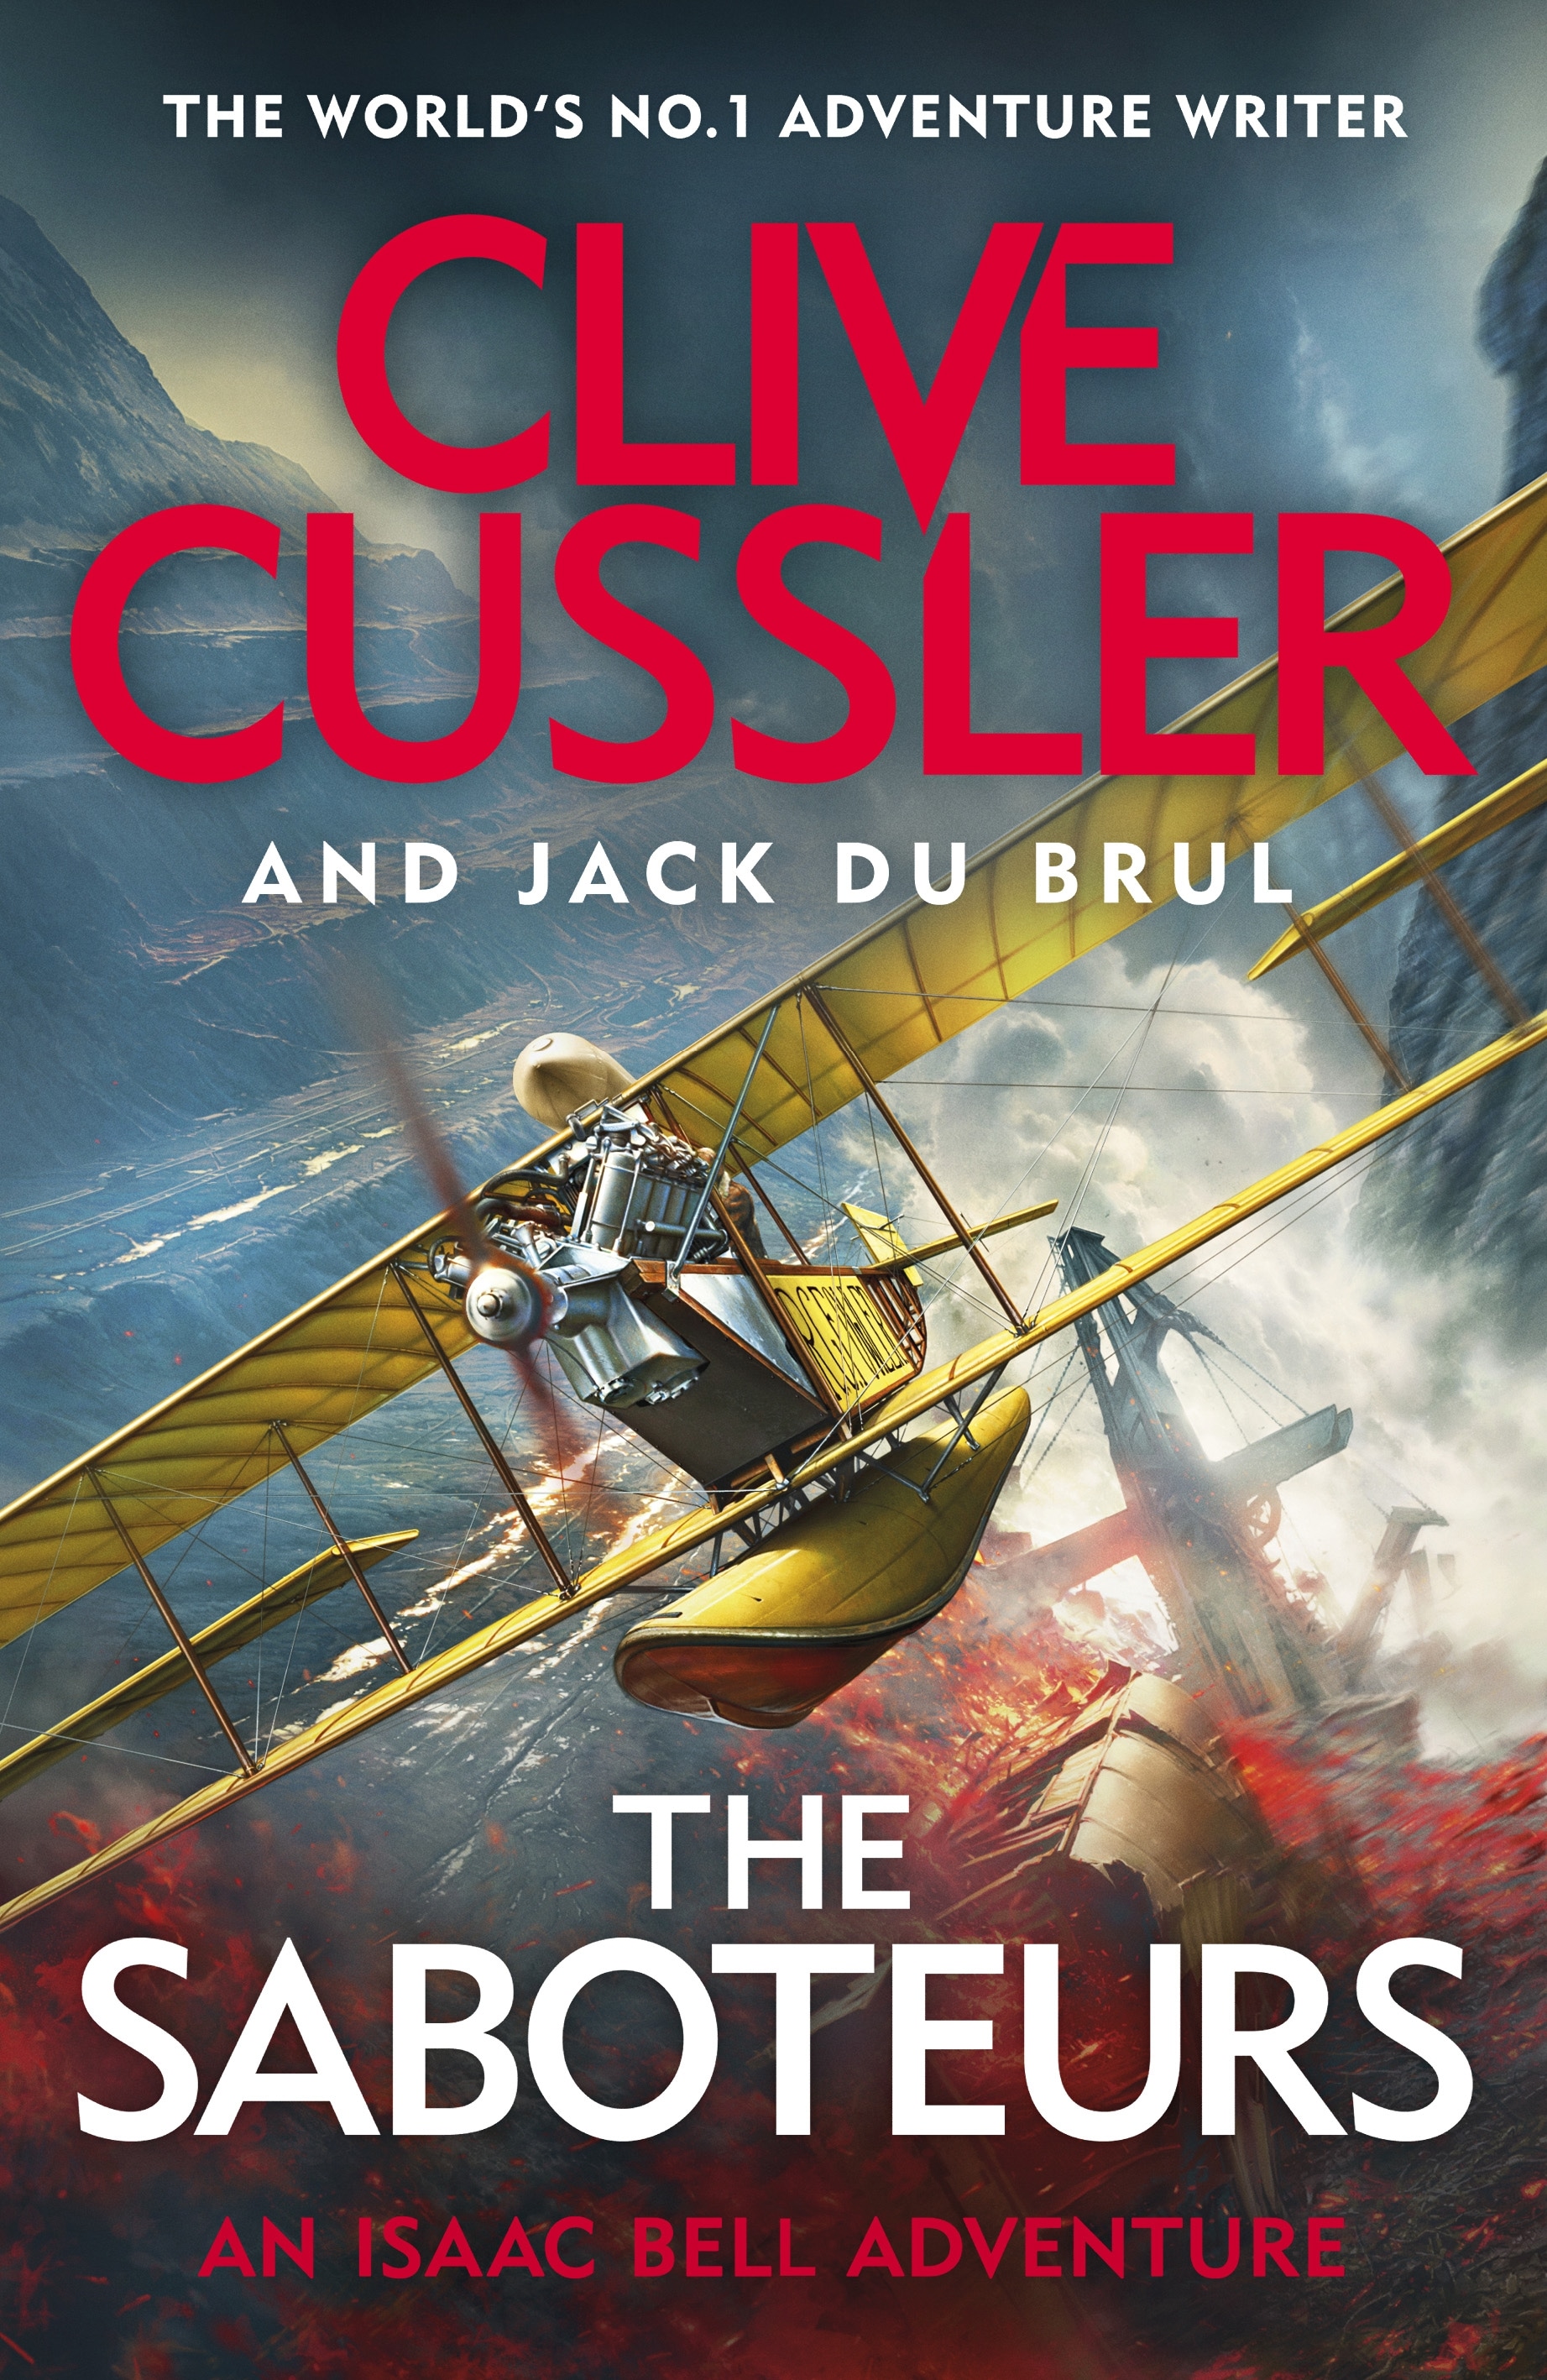 Book “The Saboteurs” by Clive Cussler, Jack du Brul — May 27, 2021